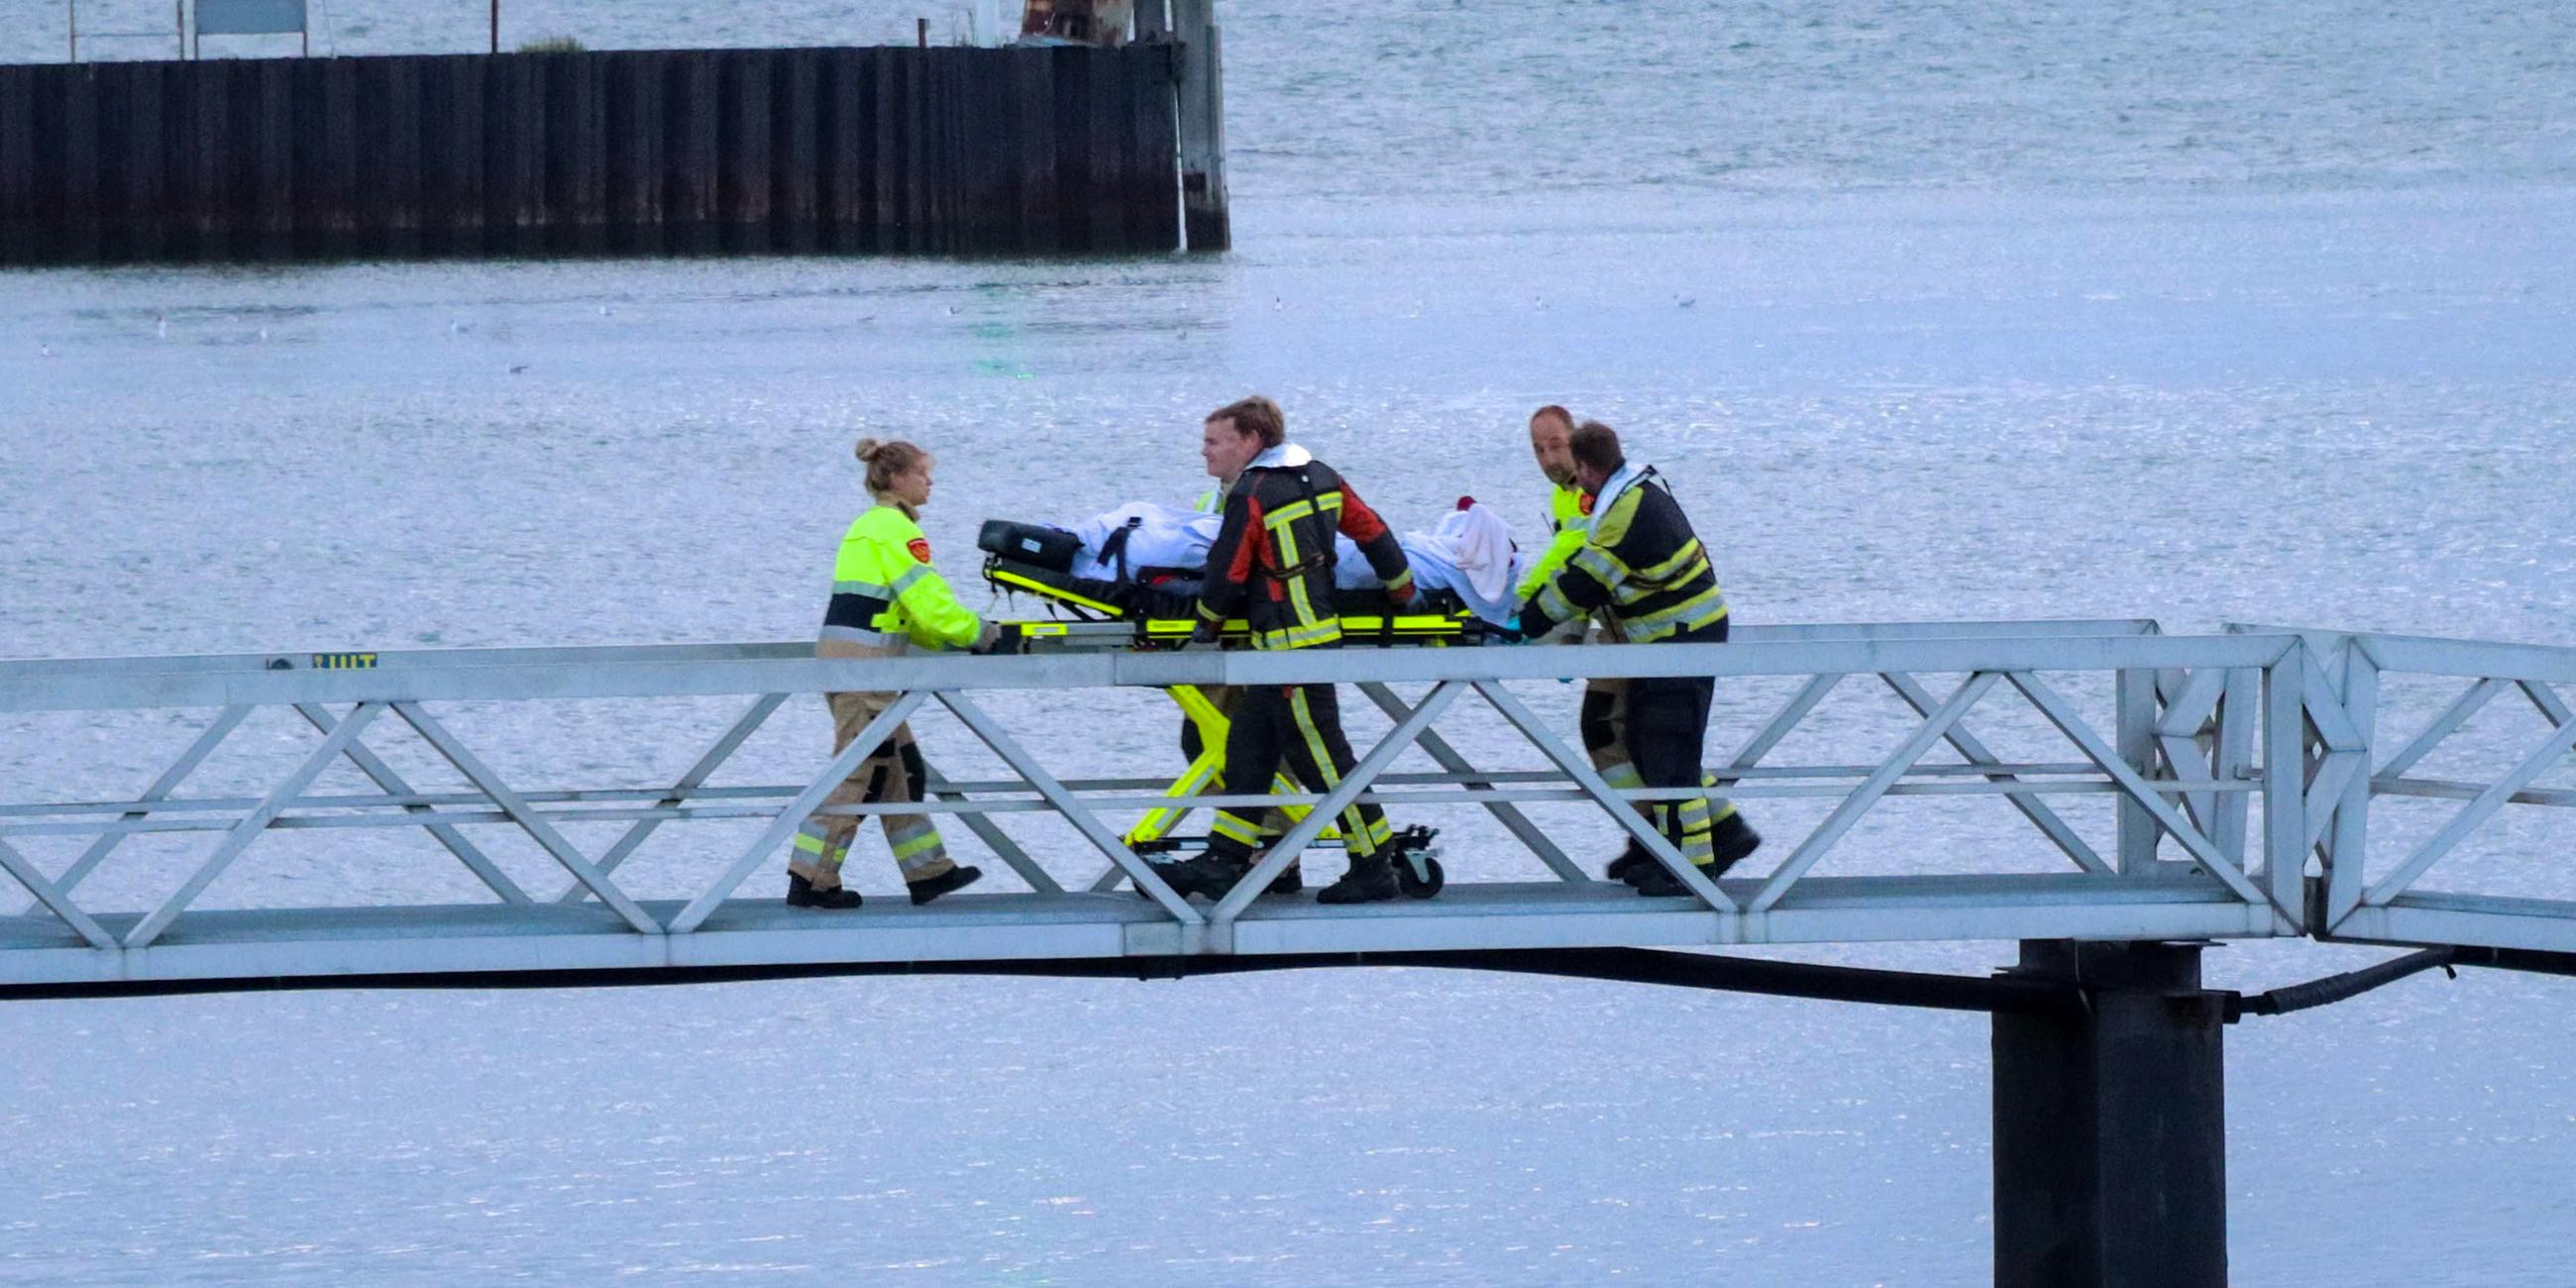 Einsatzkräfte bringen einen Verletzten über eine Brücke in einem Hafen.